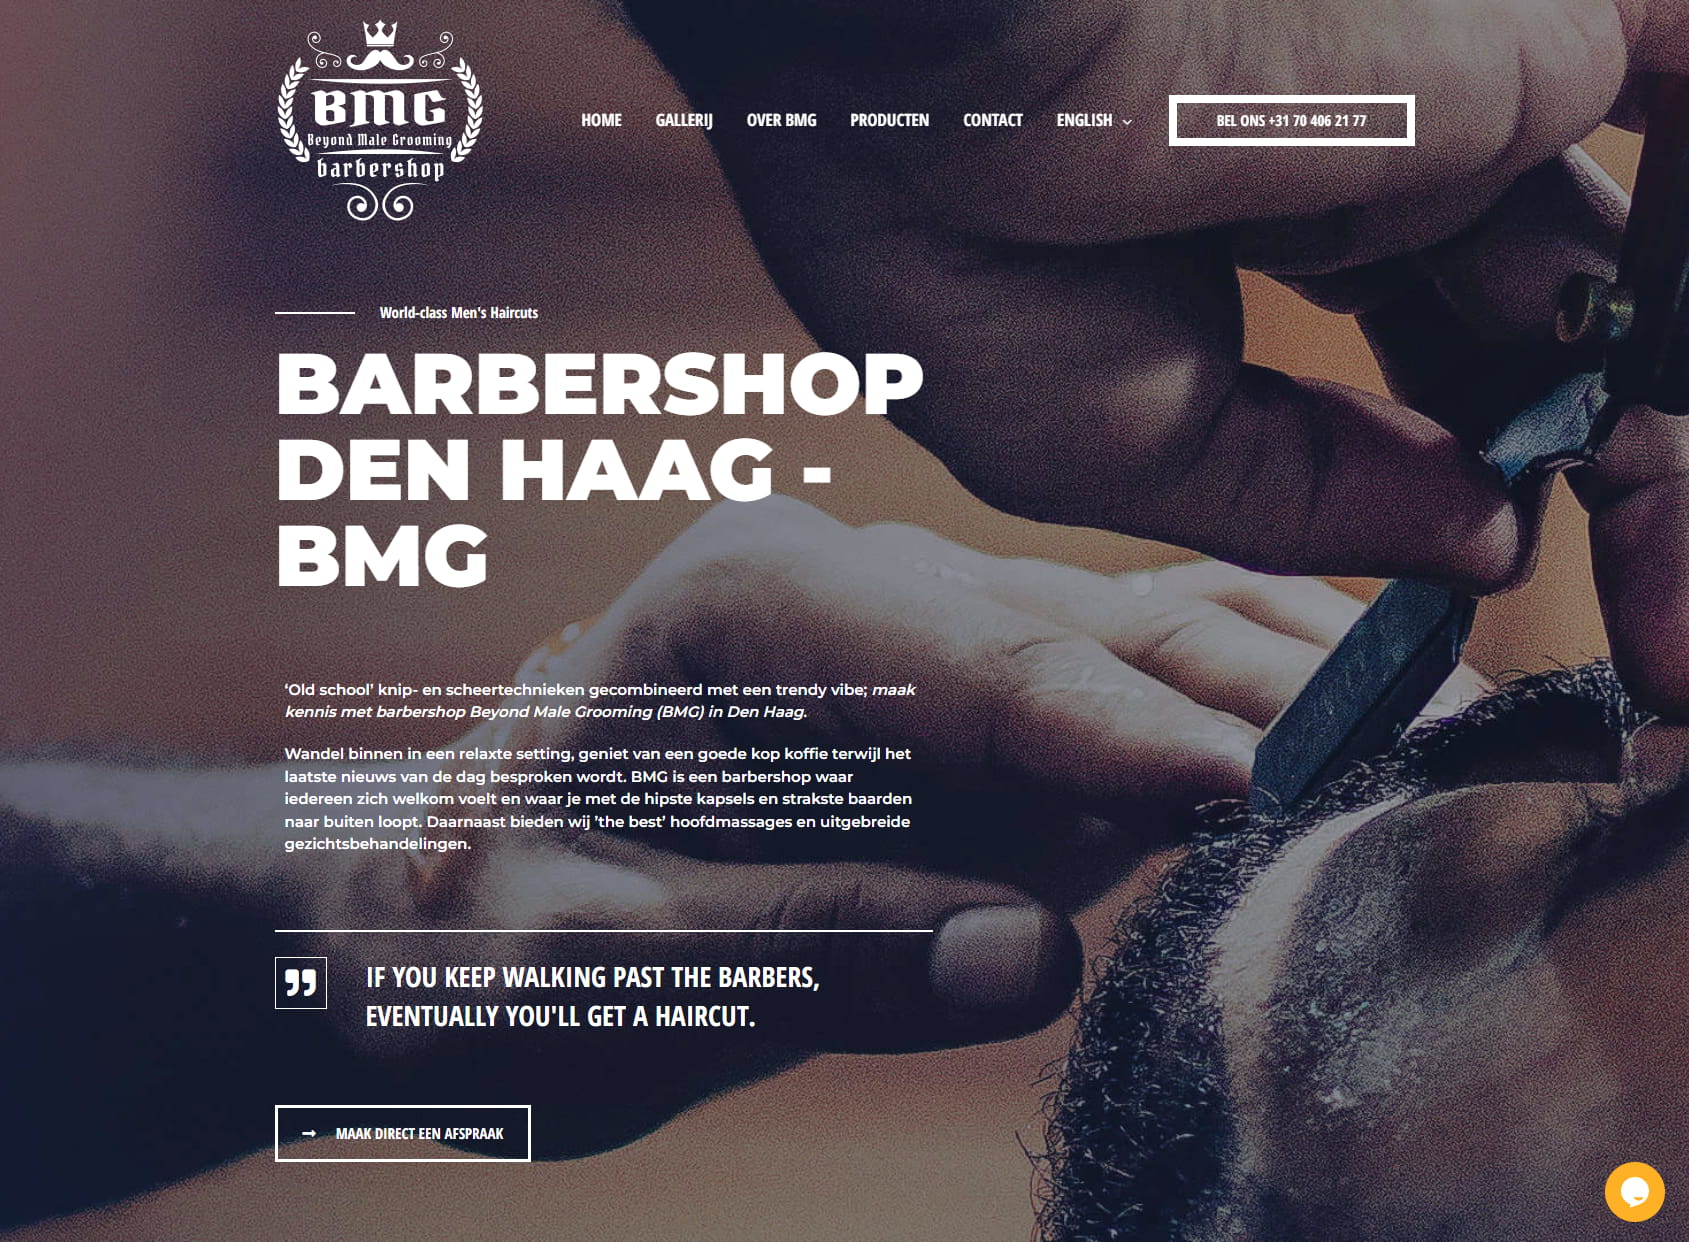 Barbershop Den Haag | Beyond Male Grooming